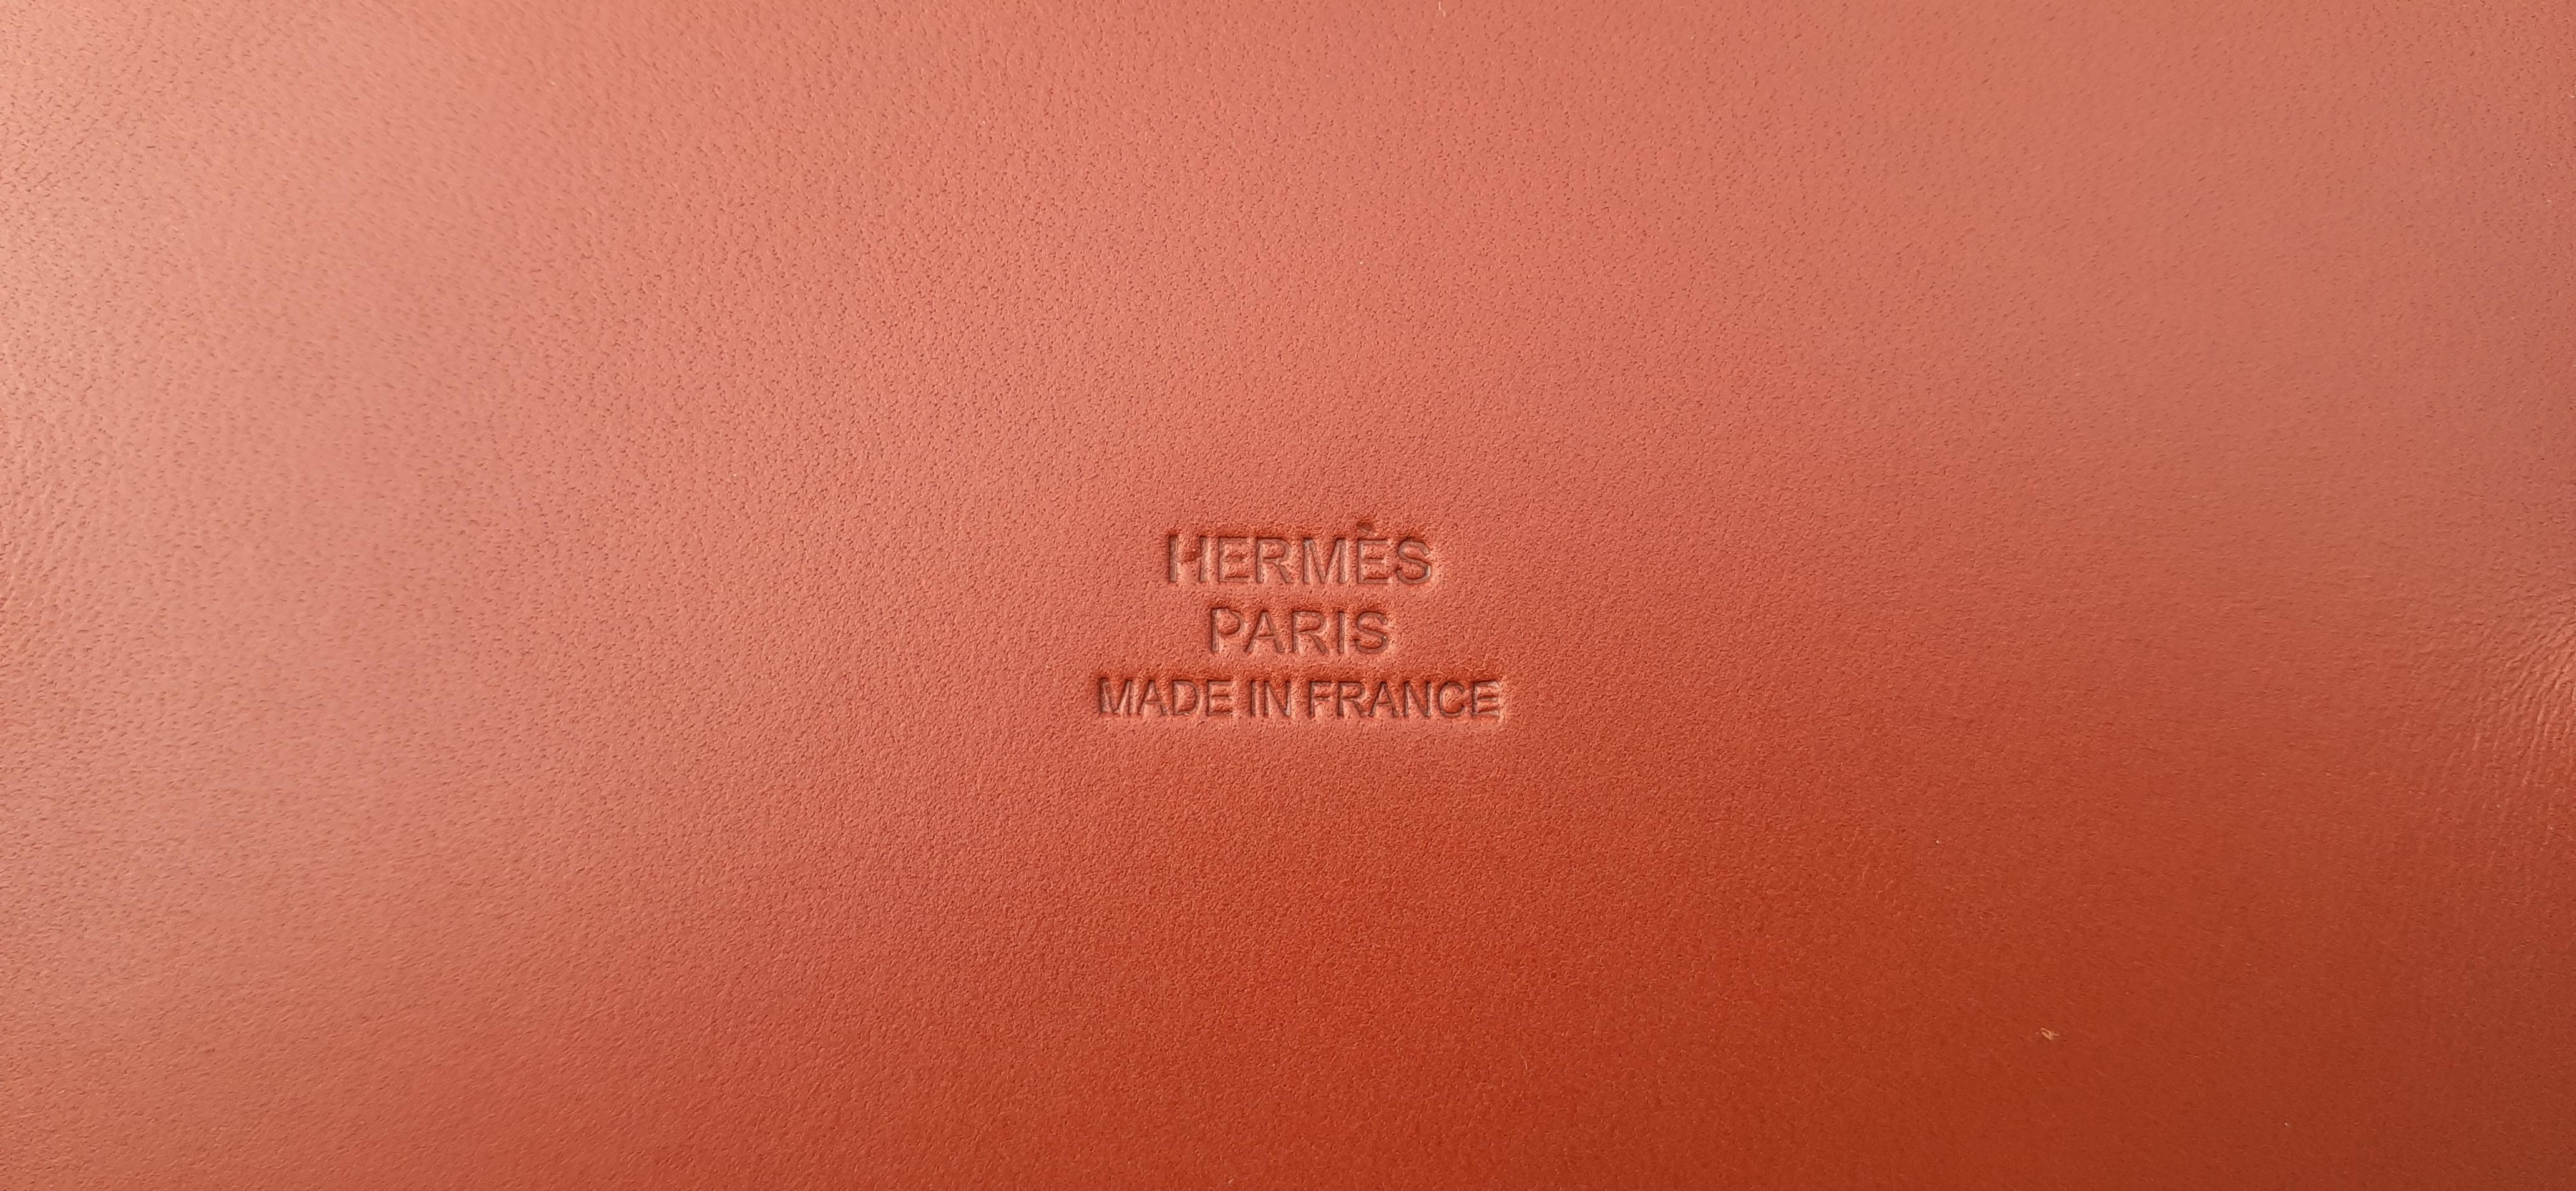 Eleganz pur für dieses wunderschöne, authentische Hermès-Wechseltablett

Aus der Sammlung 